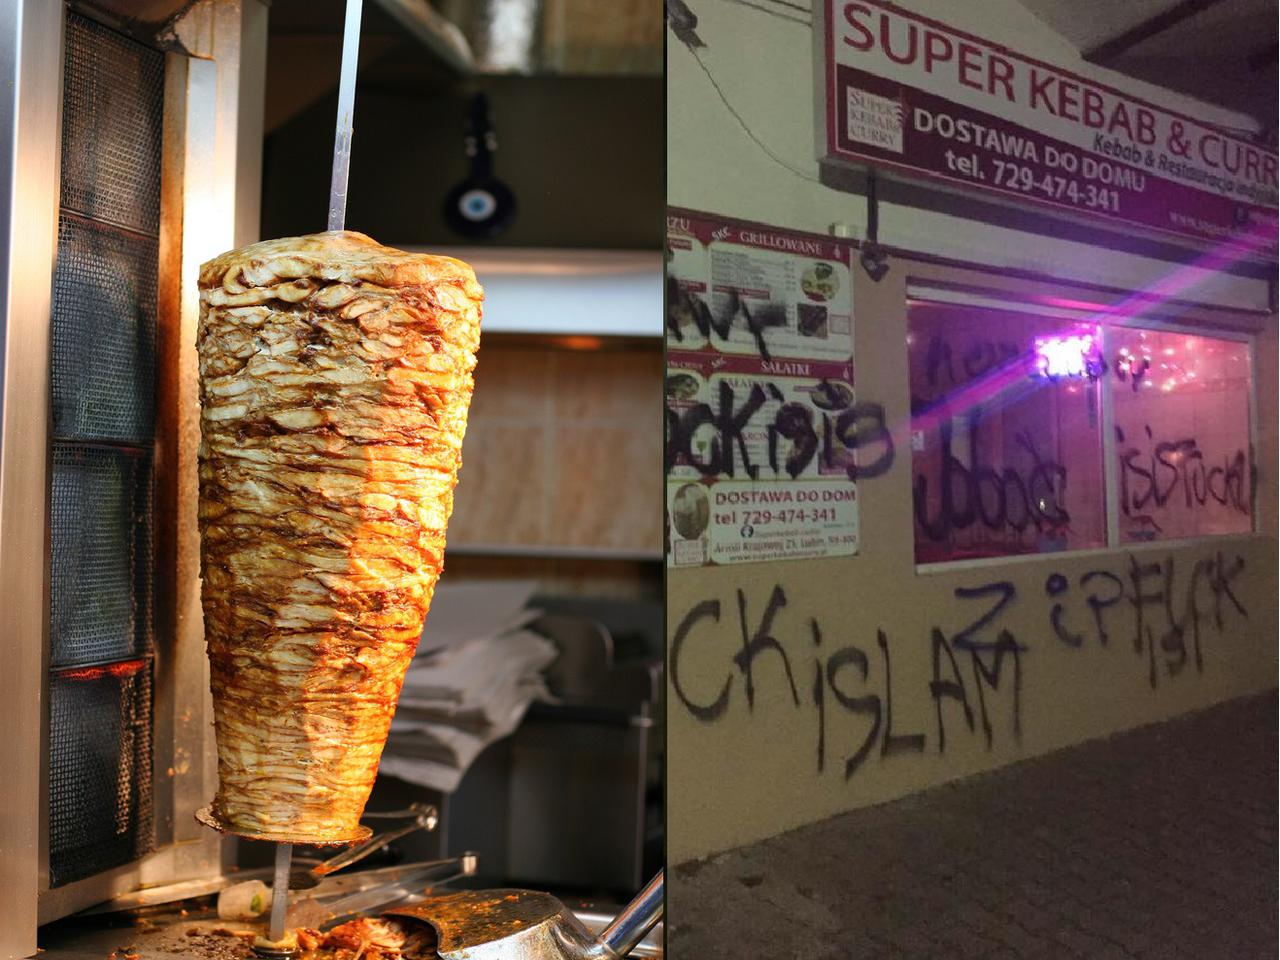 Rasistowskie napisy i zniszczone wnętrze! Kebab w Lubinie zdewastowany po raz kolejny! [WIDEO, ZDJĘCIA]